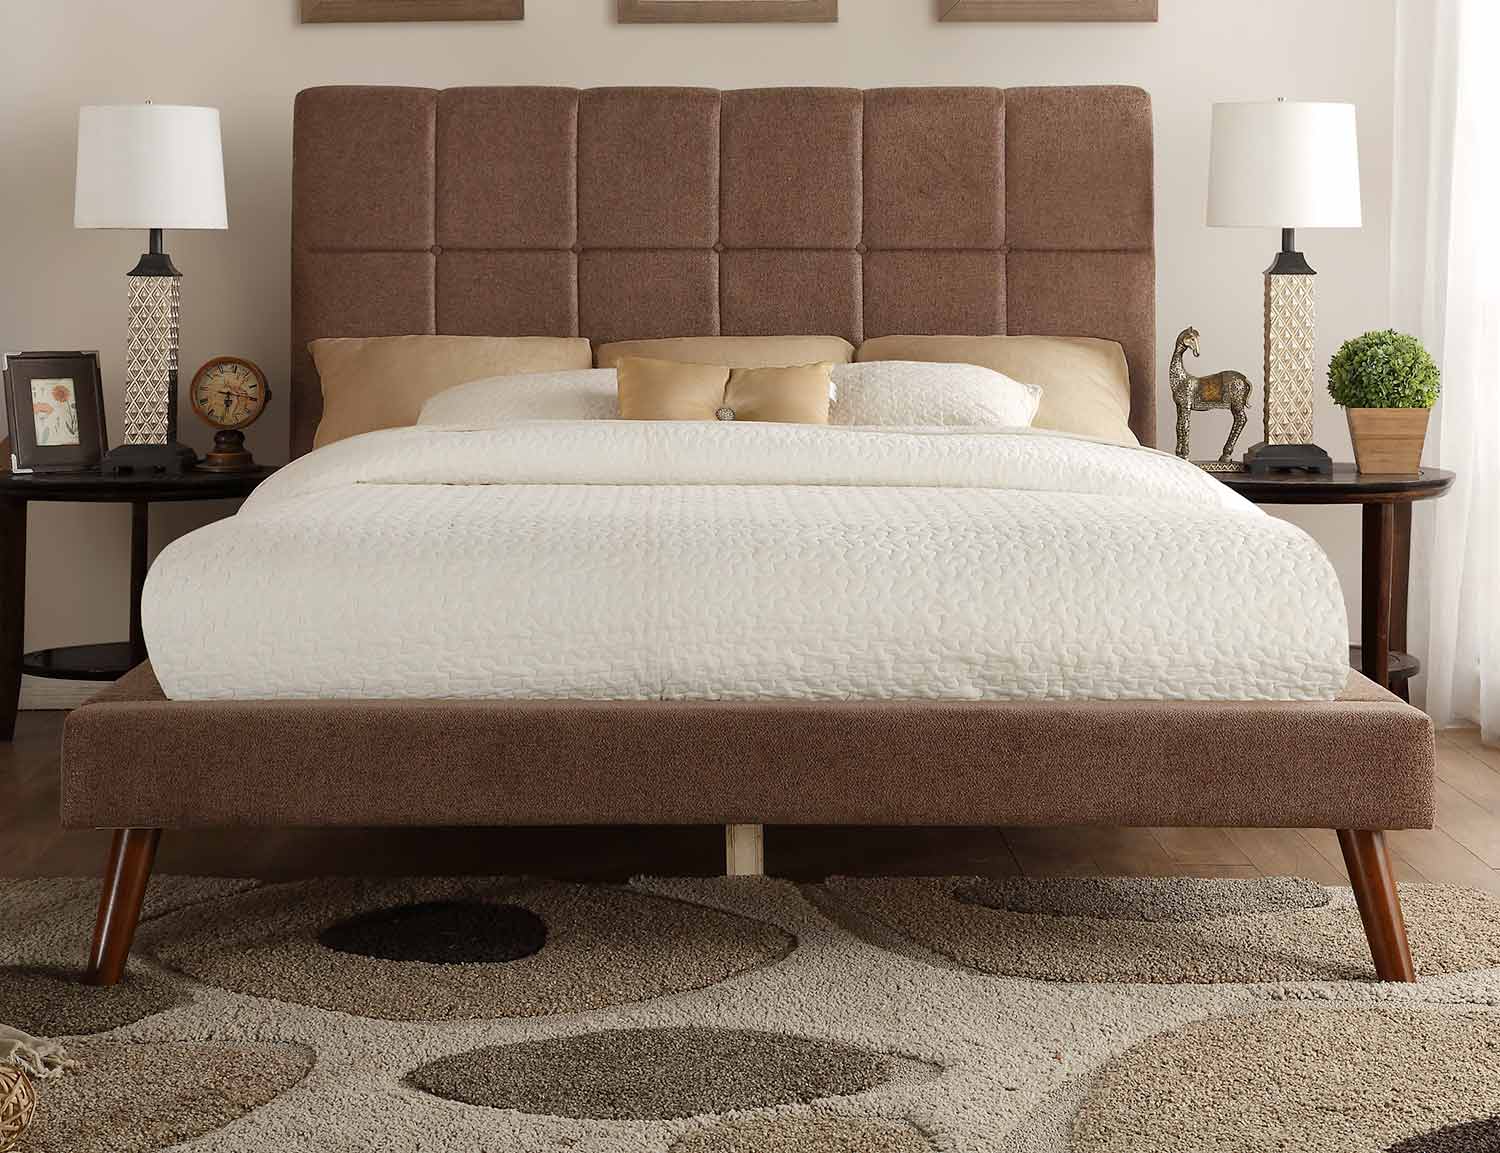 Homelegance Kinsale Upholstered Bed - Brown